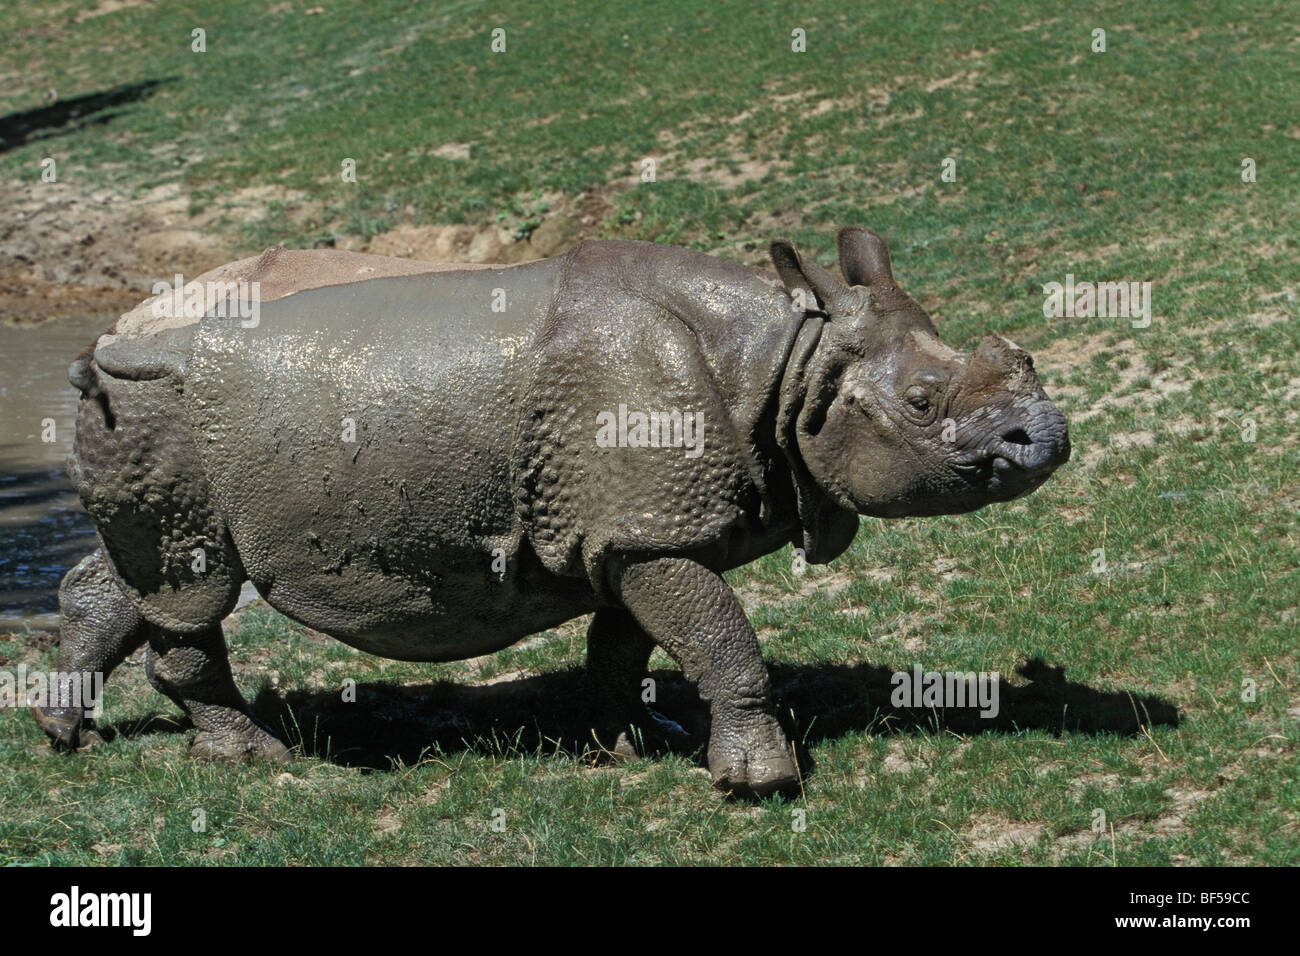 Rhinocéros unicorne de l'Inde (Rhinoceros unicornis) après la prise de boue, captive, Inde Banque D'Images